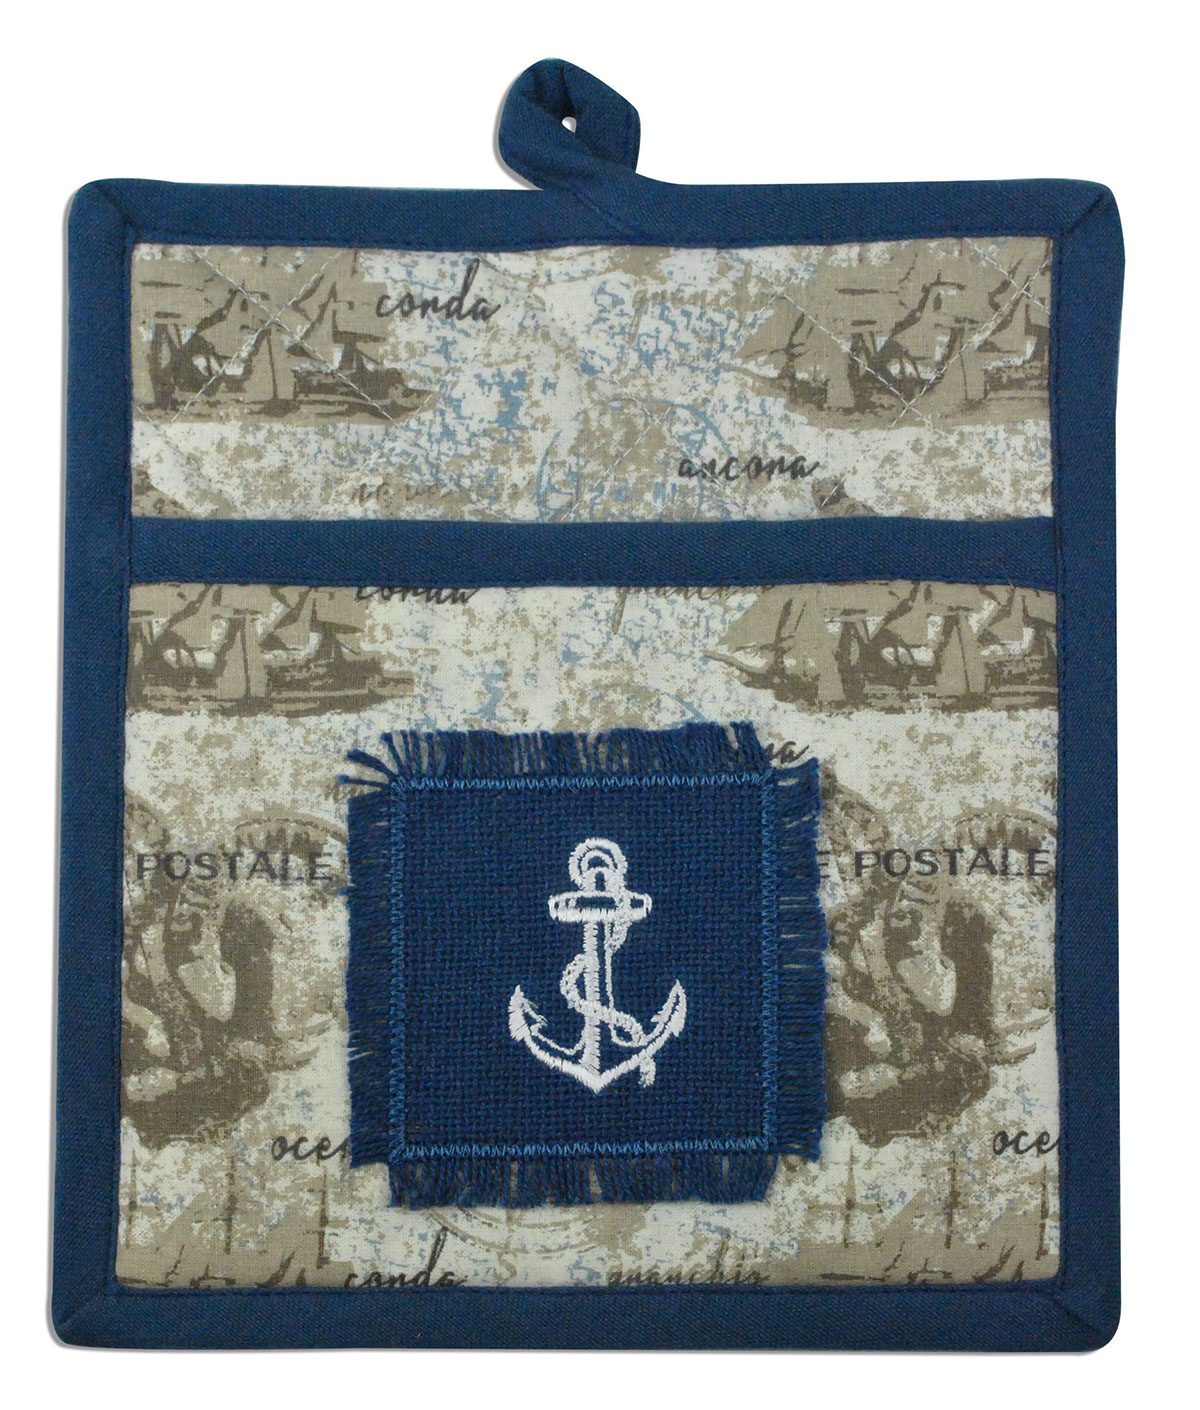 nautical Textiles burlap tableware kitchen towels potholder placemat